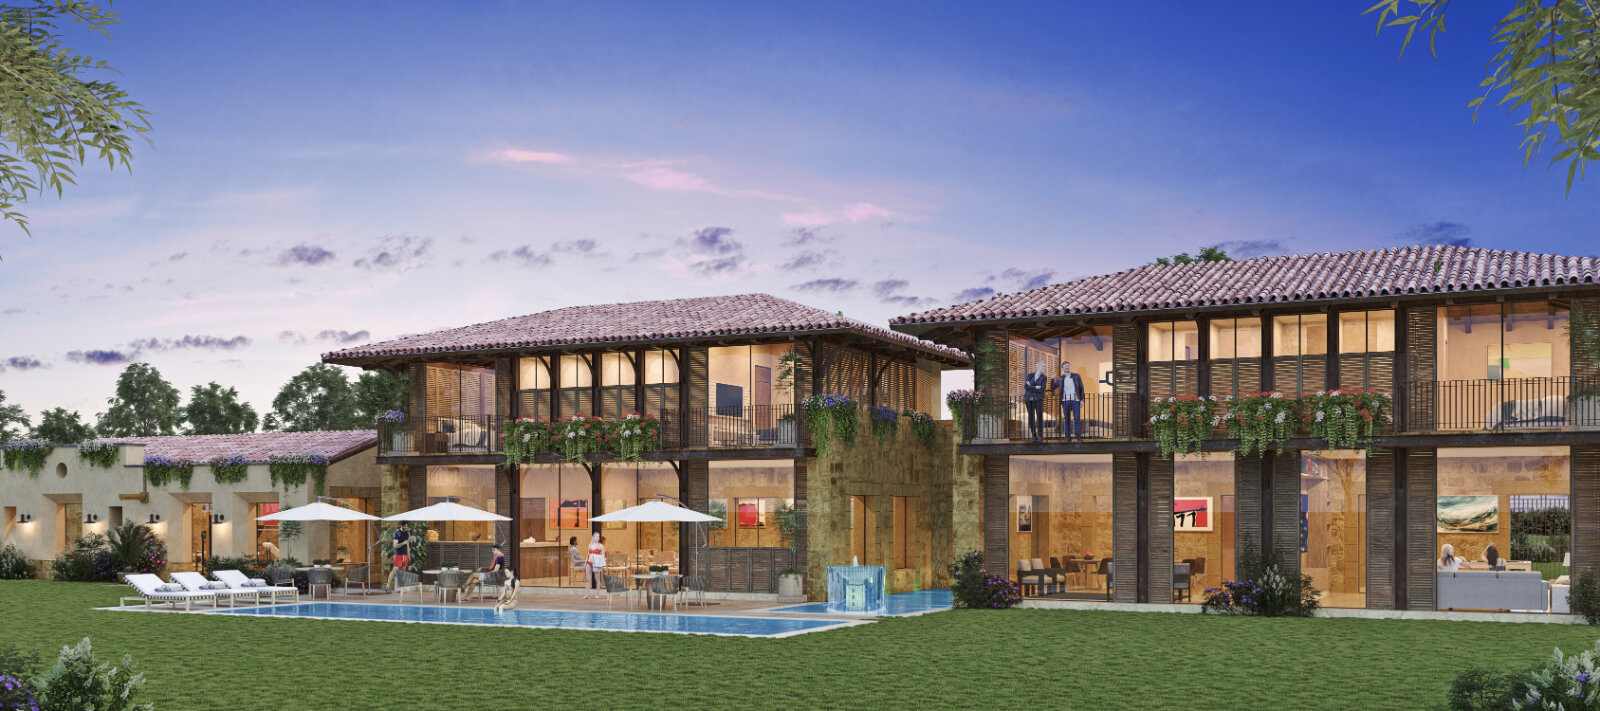 10,952 m2, helipuerto, lago, caballerizas y mas en venta San Miguel de Allende